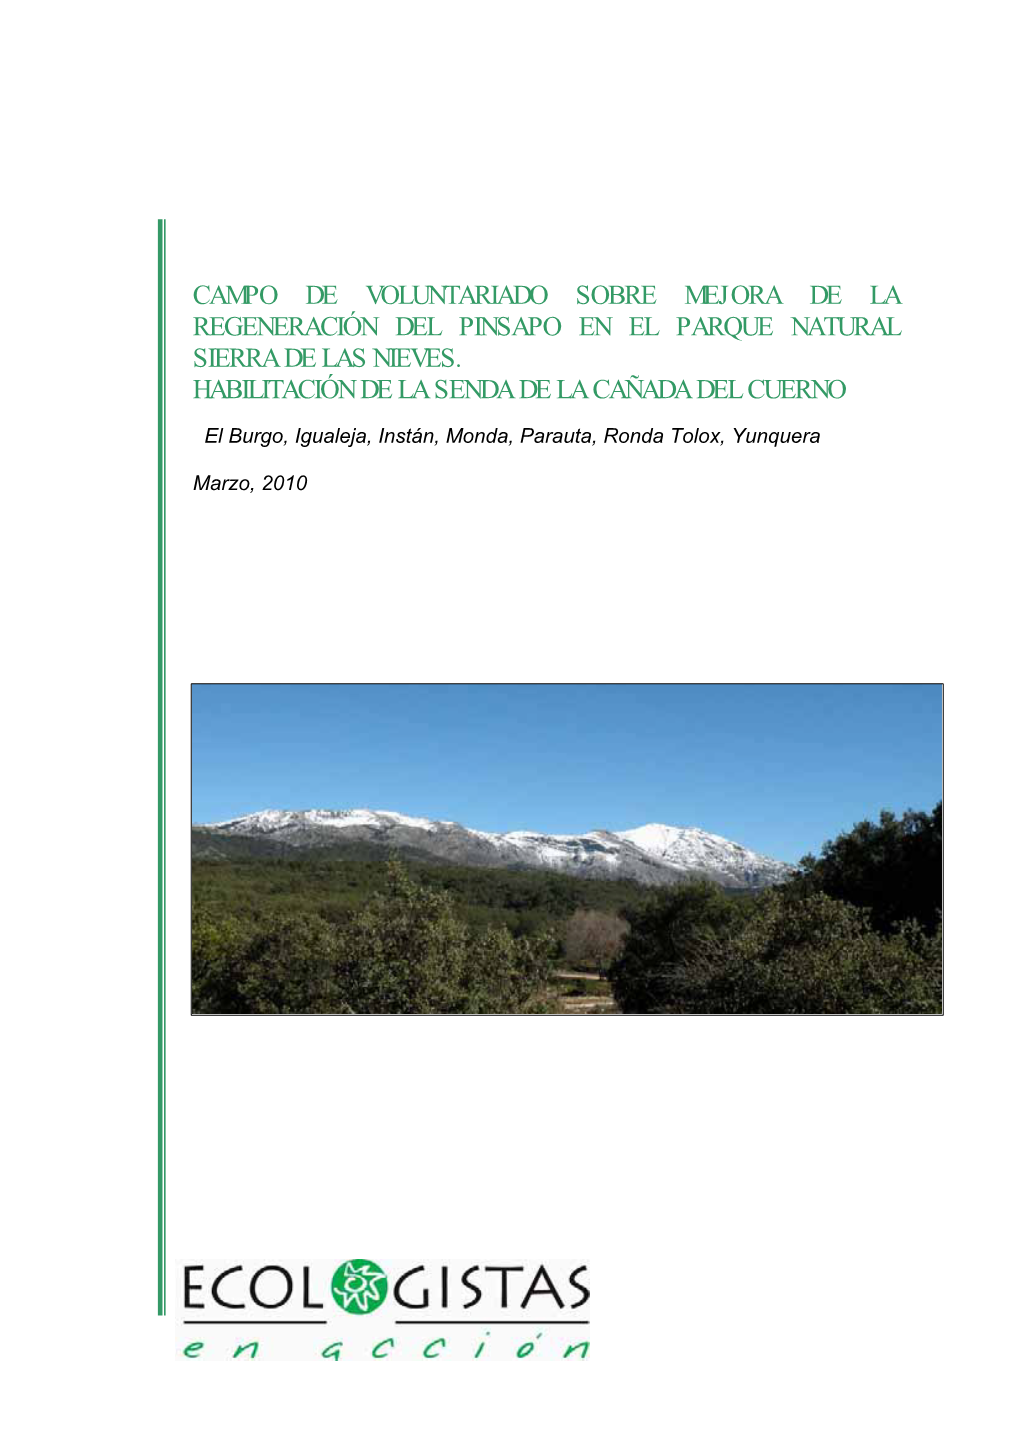 Campo De Voluntariado Sobre Mejora De La Regeneración Del Pinsapo En El Parque Natural Sierra De Las Nieves. Habilitación De La Senda De La Cañada Del Cuerno